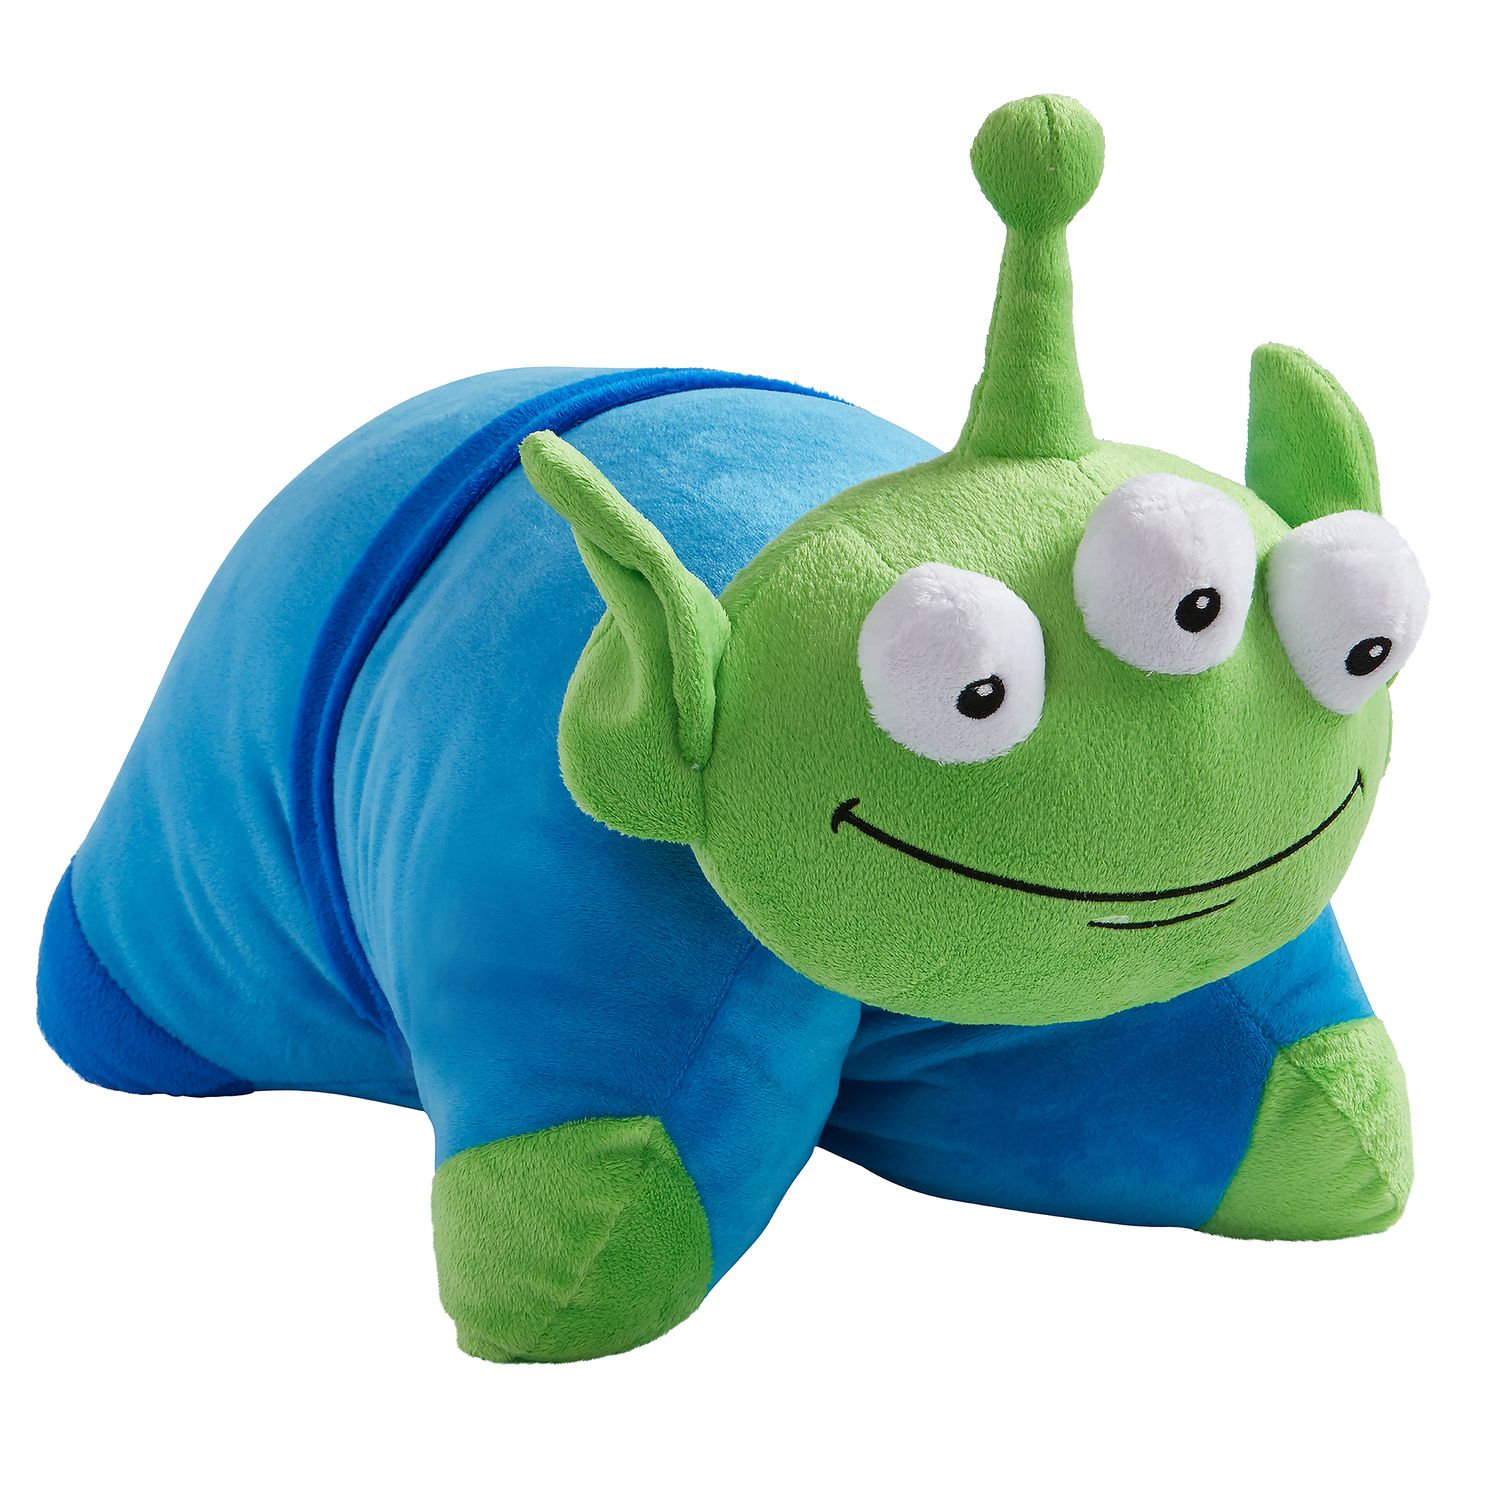 toy story alien stuffed animal